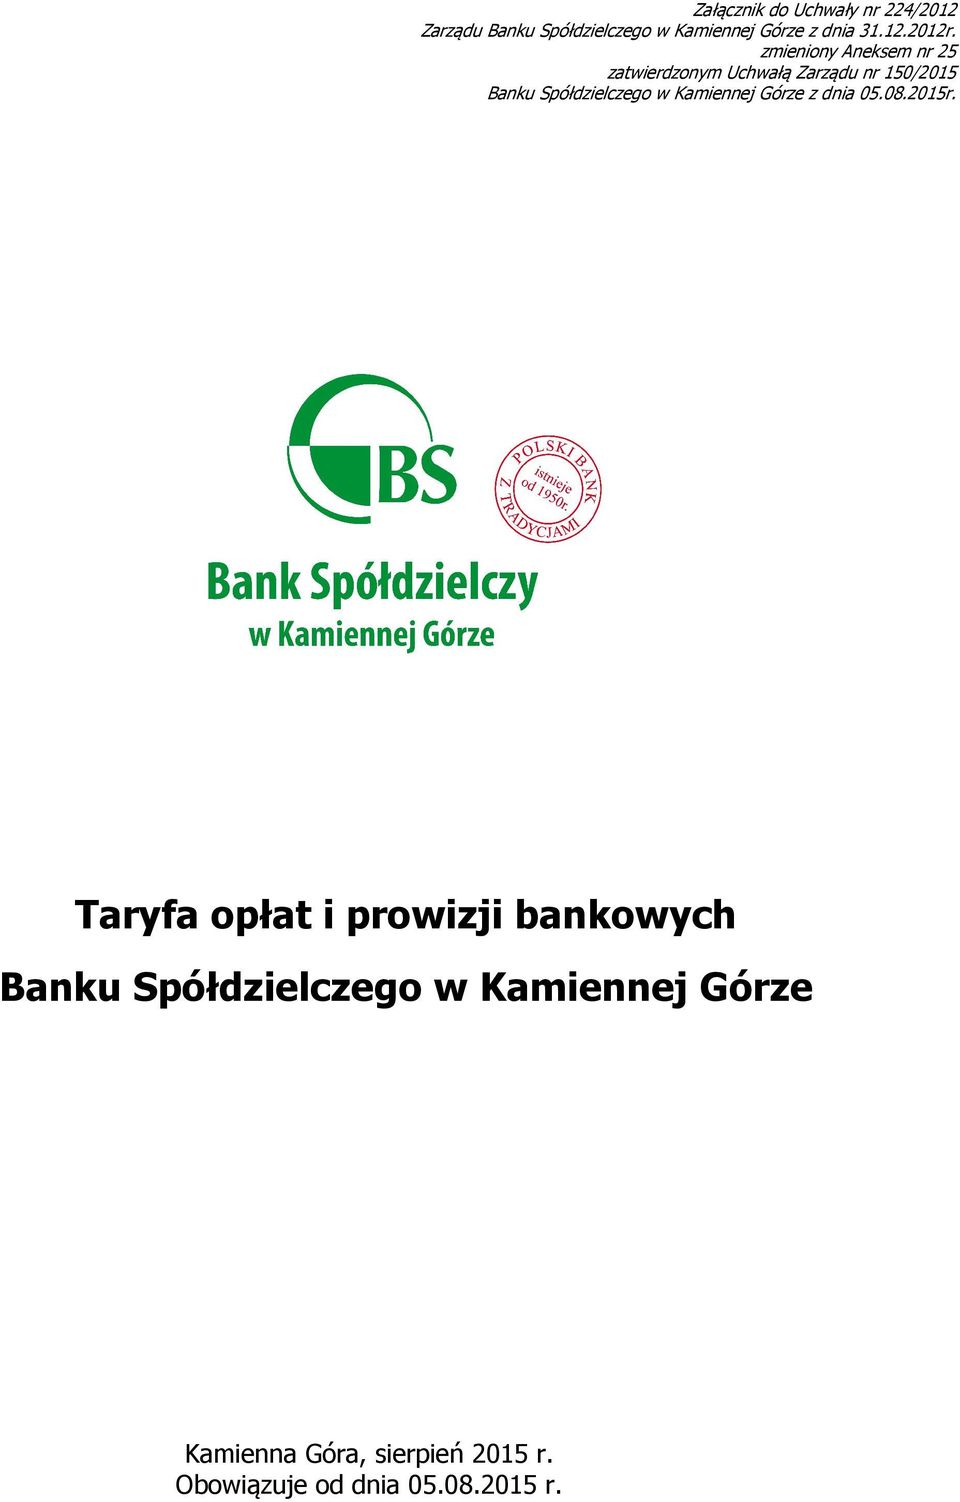 zmieniony Aneksem nr 25 zatwierdzonym Uchwałą Zarządu nr 150/2015 Banku Spółdzielczego w Kamiennej Górze z dnia 05.